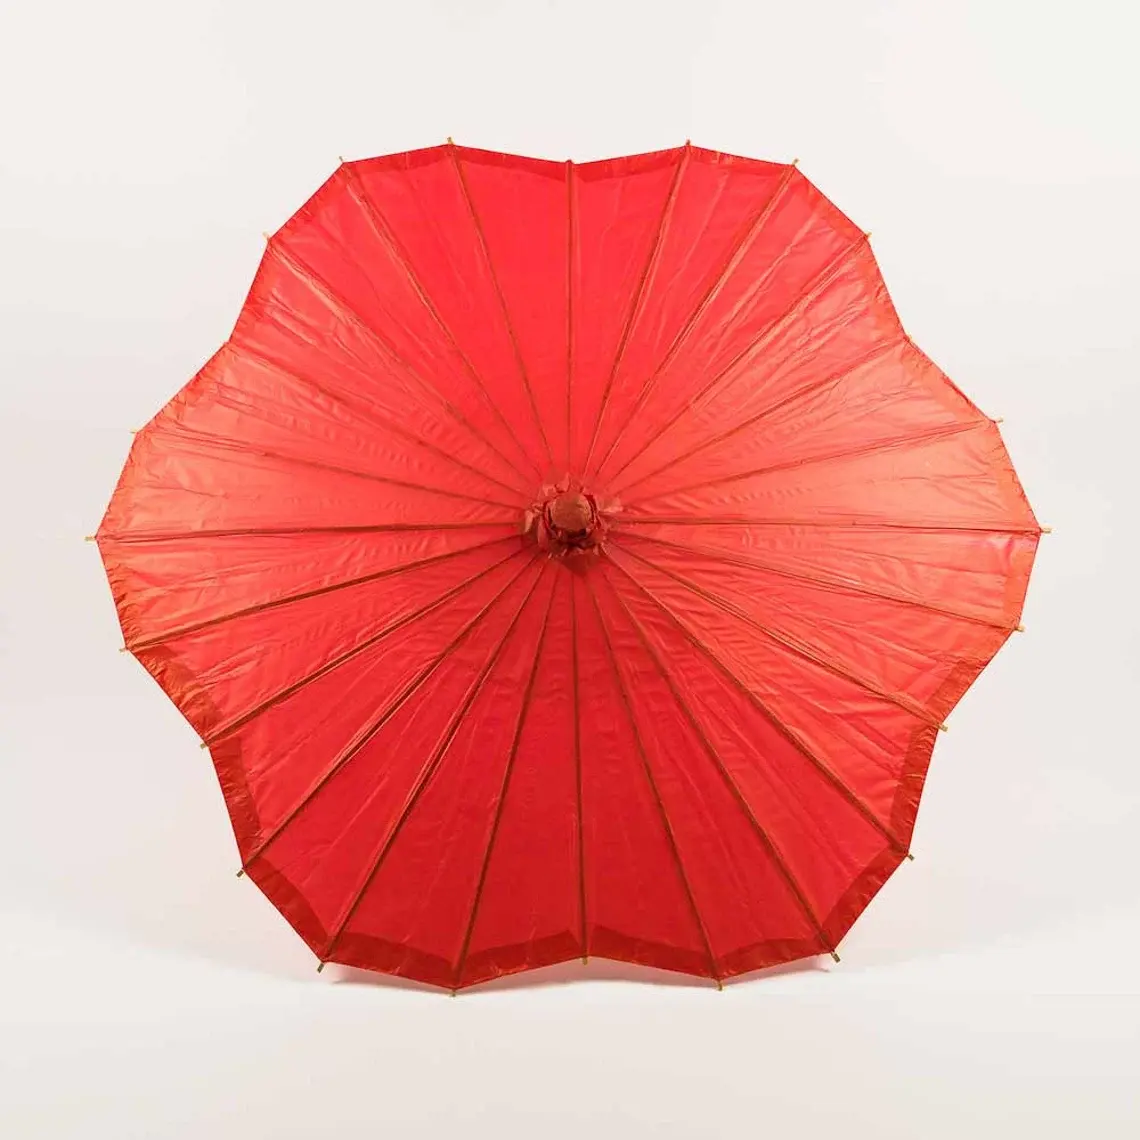 مظلة من البامبو الورقي مخصصة 32 بوصة على شكل زهرة المسكولب بمقبض خشبي وقابلة للطي زينة للشاطئ والزفاف